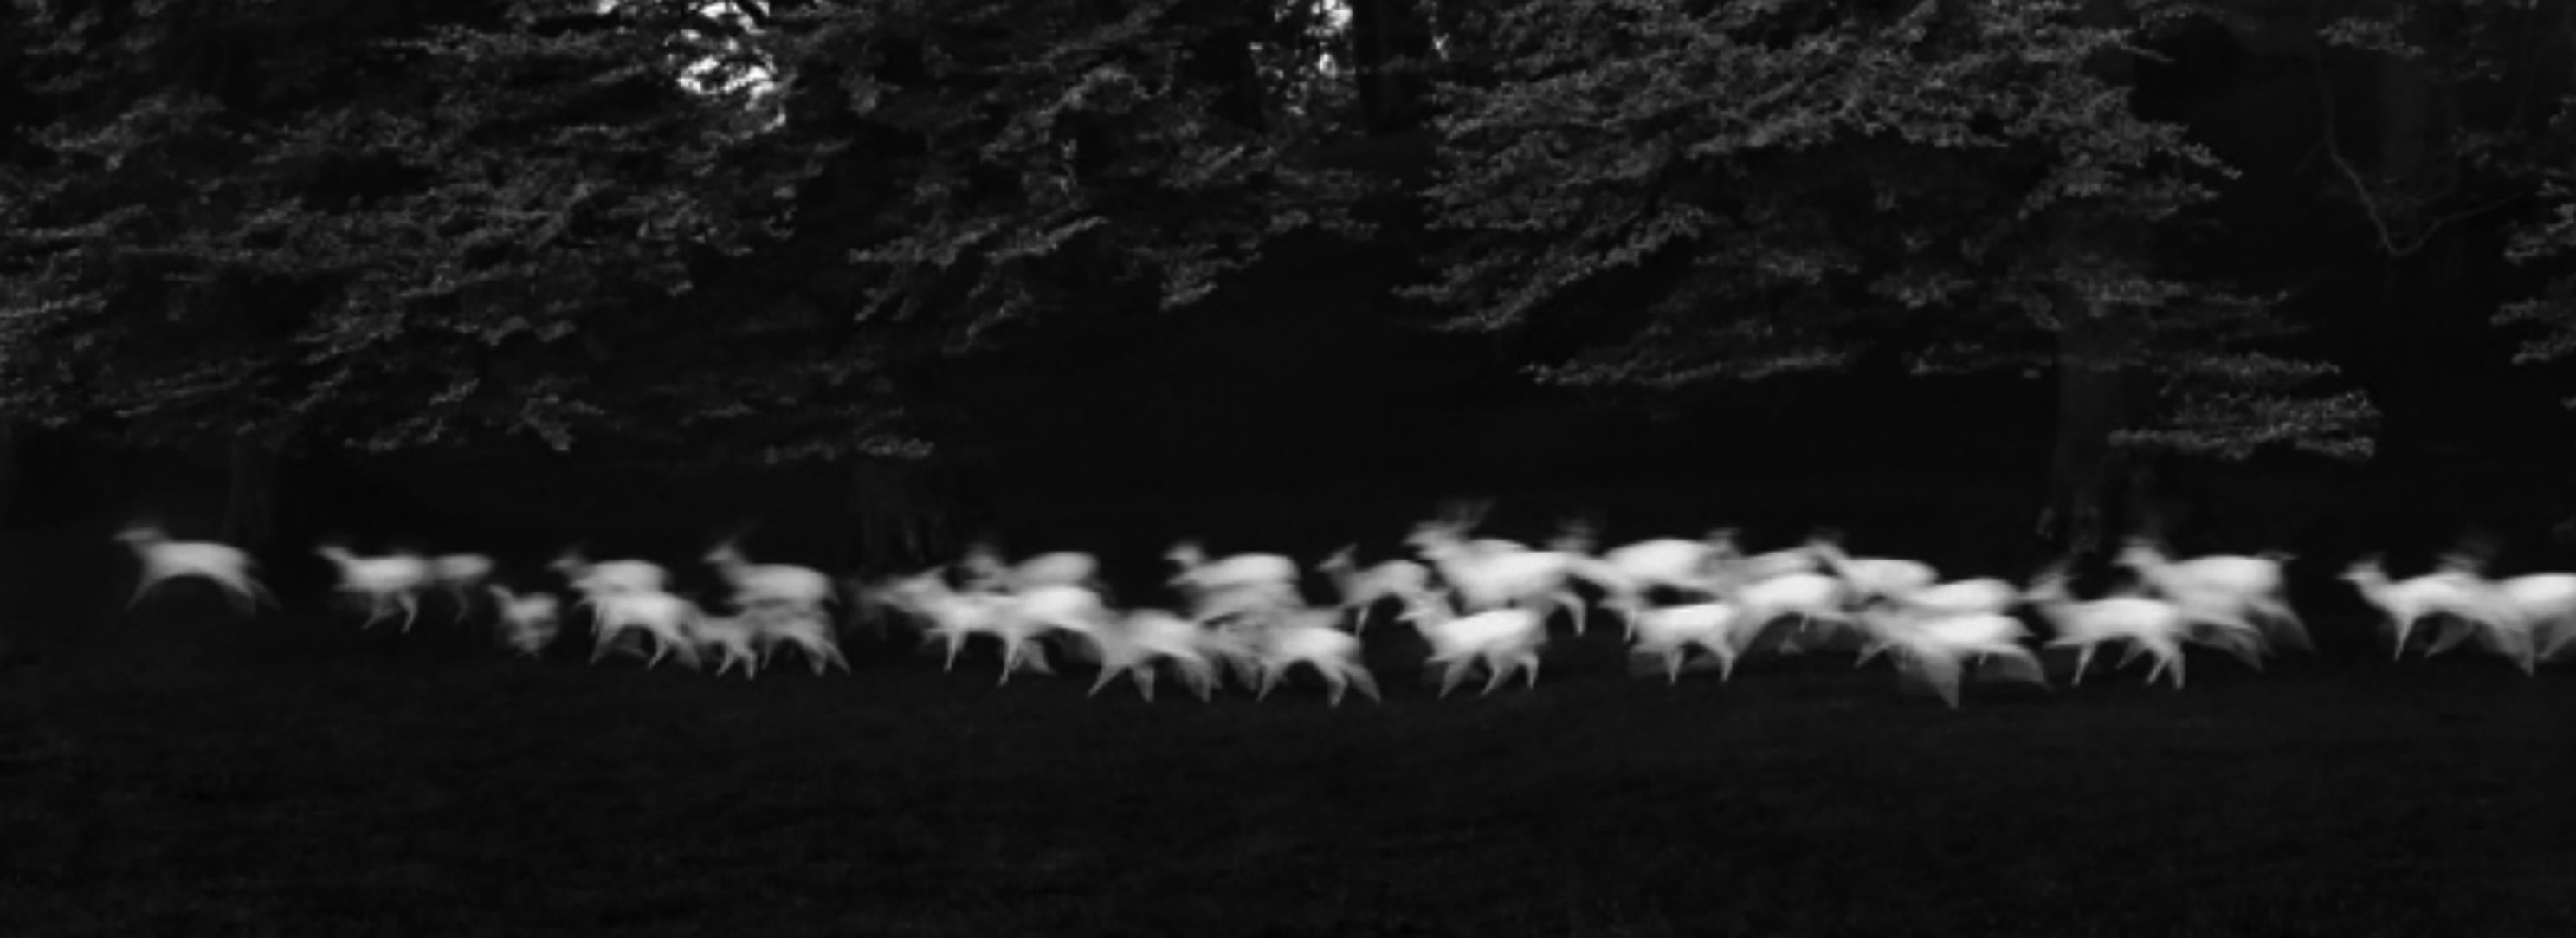 Paul Caponigro Black and White Photograph - Running White Deer, Wicklow, Ireland